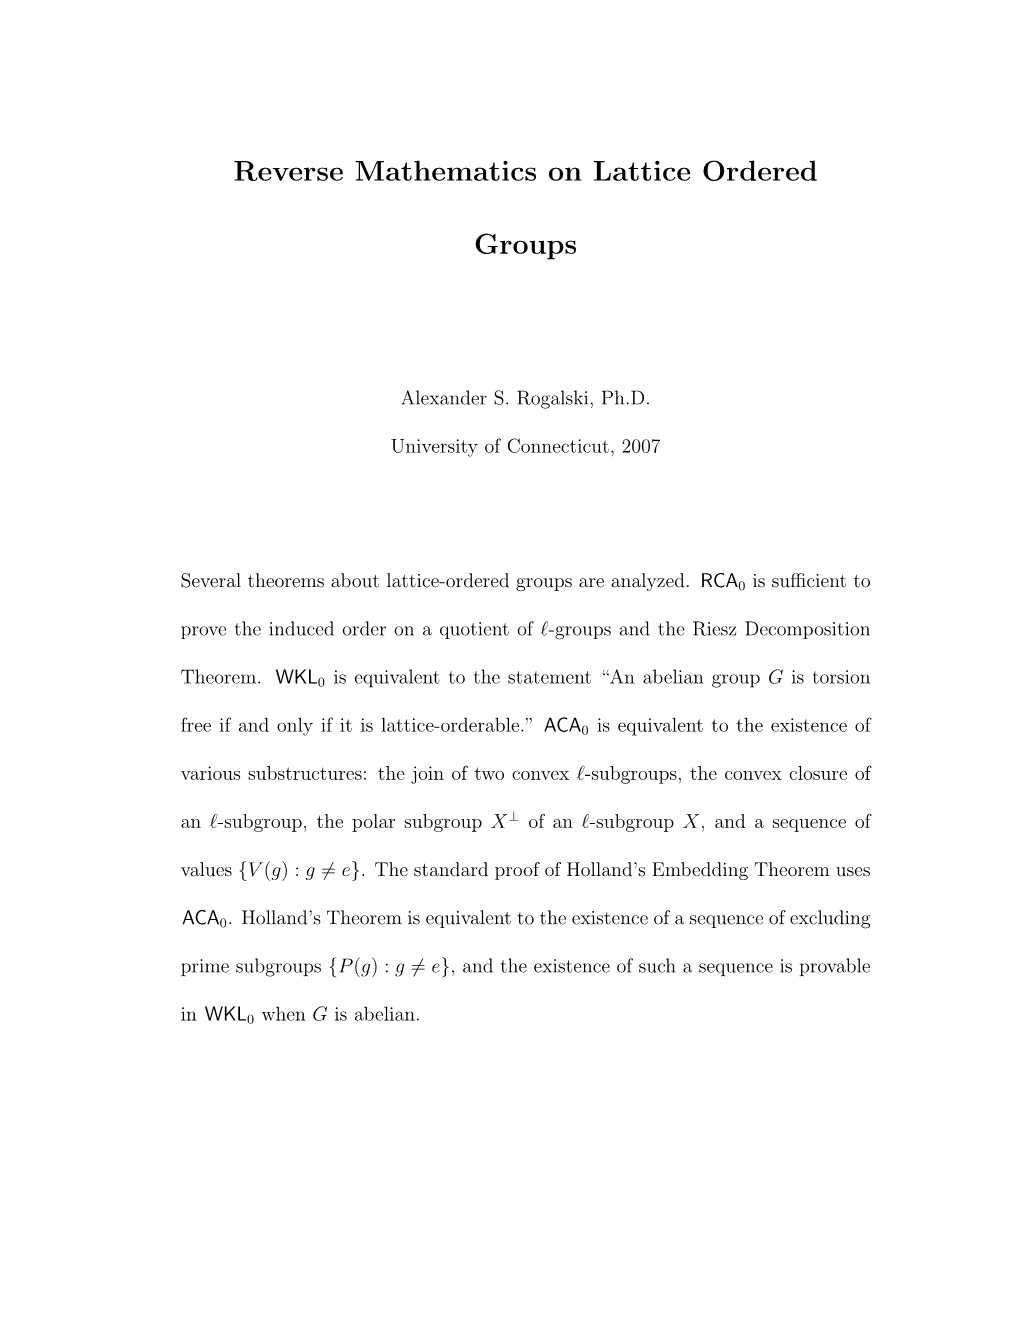 Reverse Mathematics on Lattice Ordered Groups